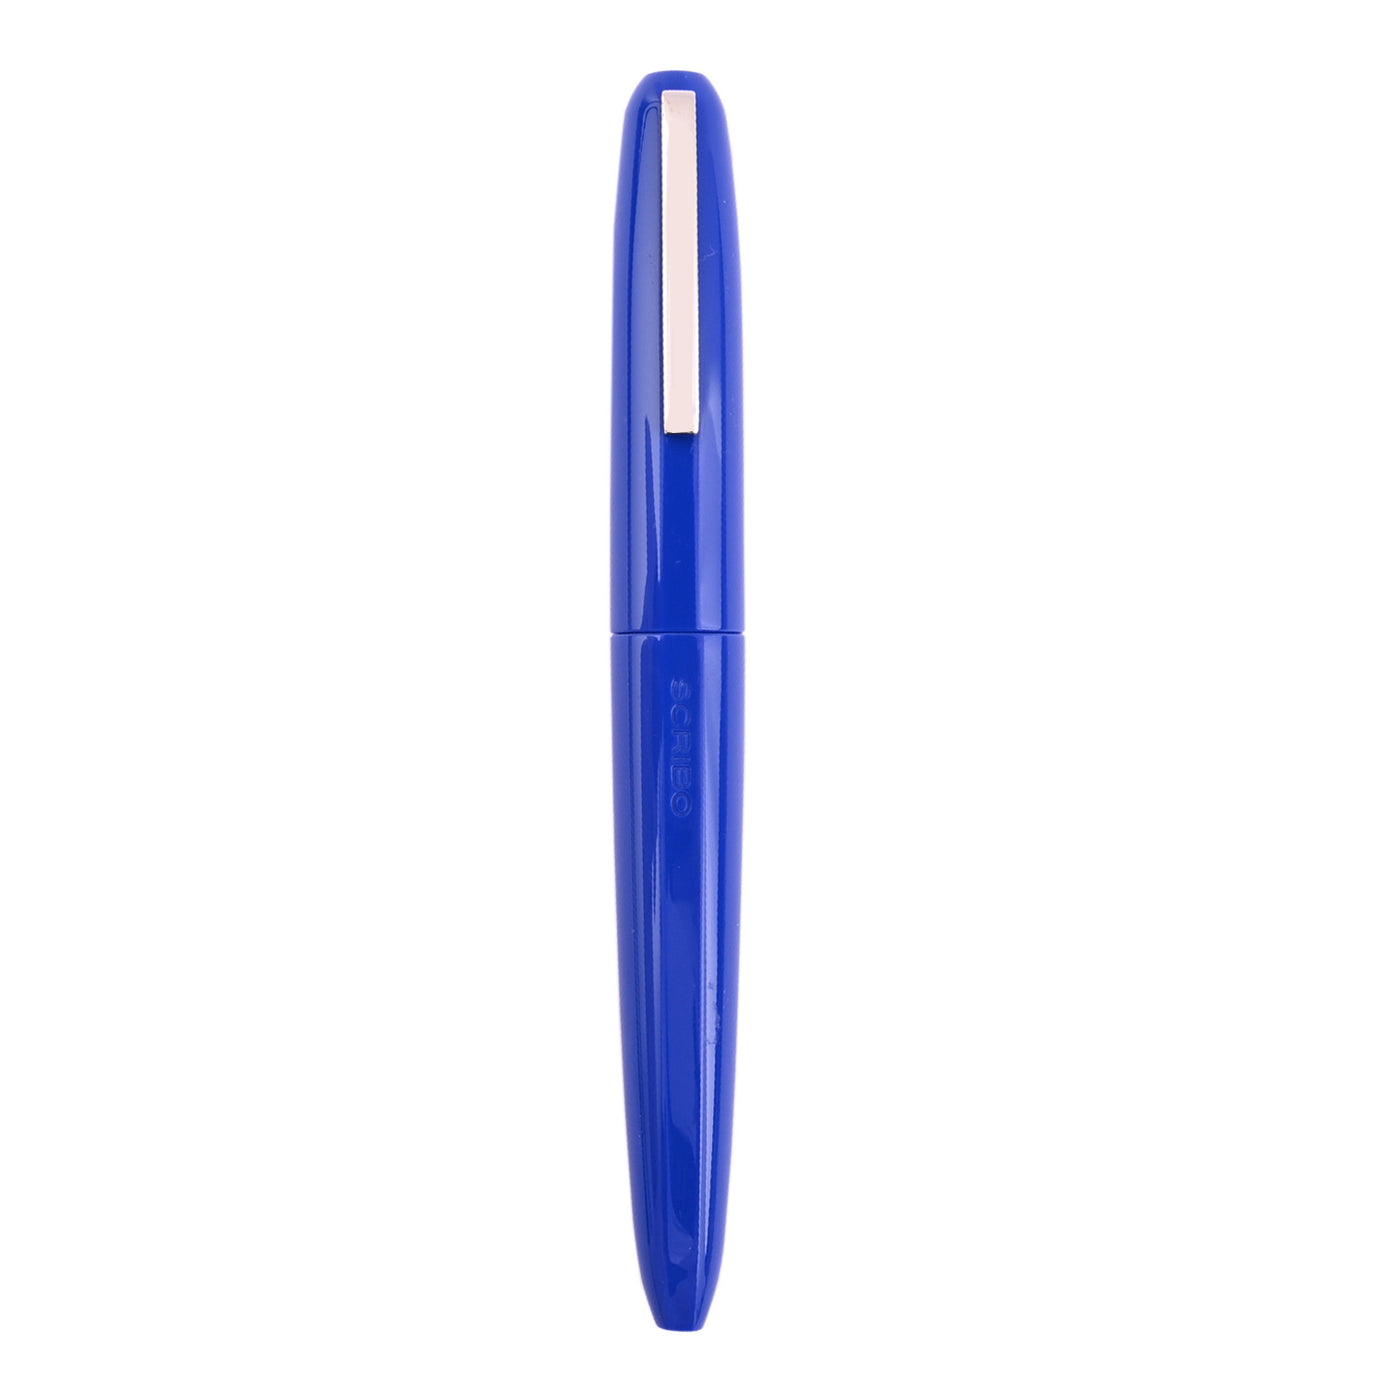 Scribo Piuma Fountain Pen - Pop (Limited Edition) 5